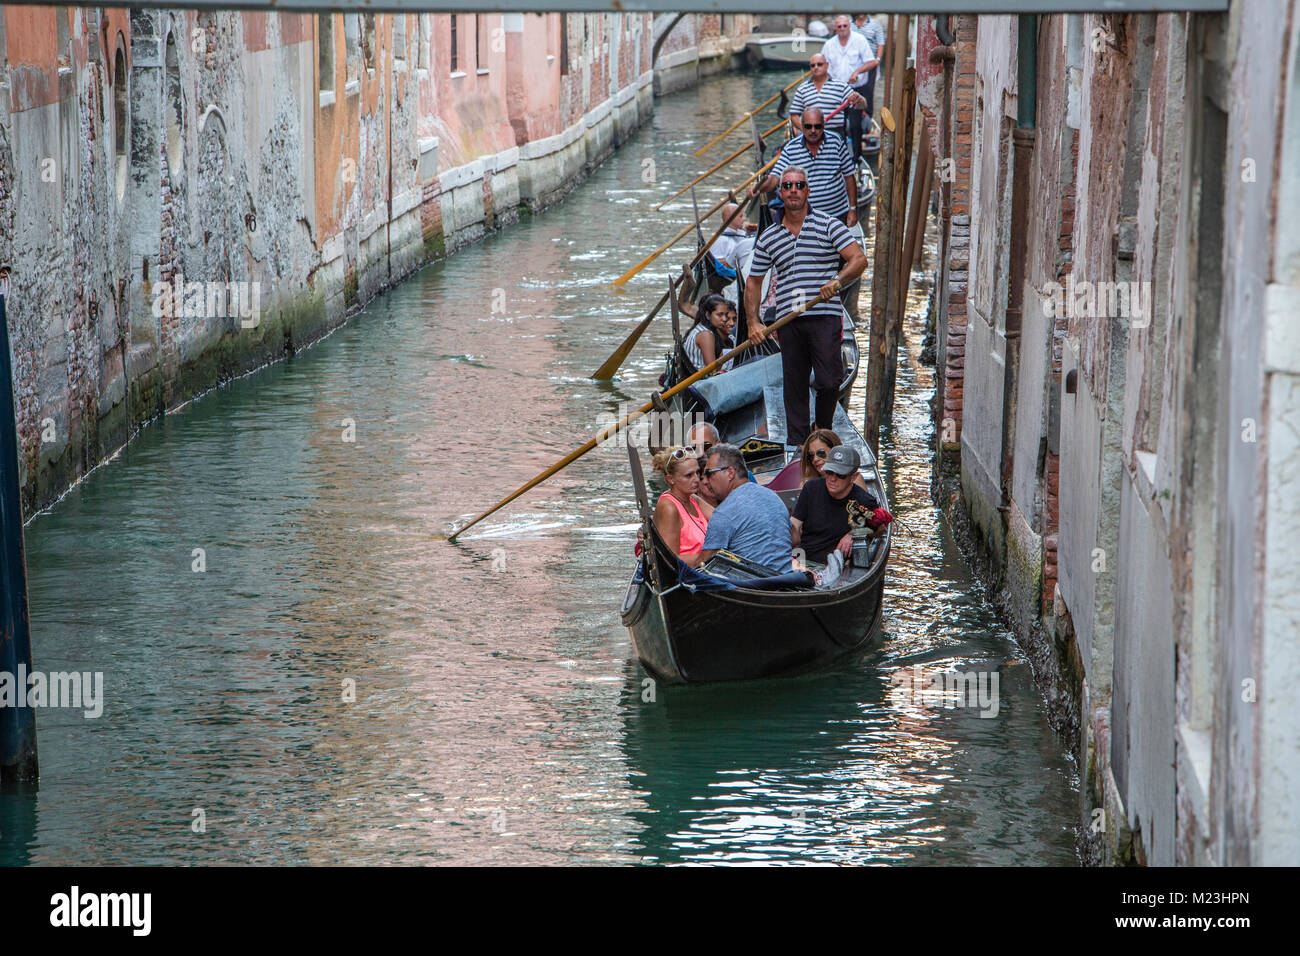 Gondeln in den Kanälen von Venedig, Italien Stockfoto